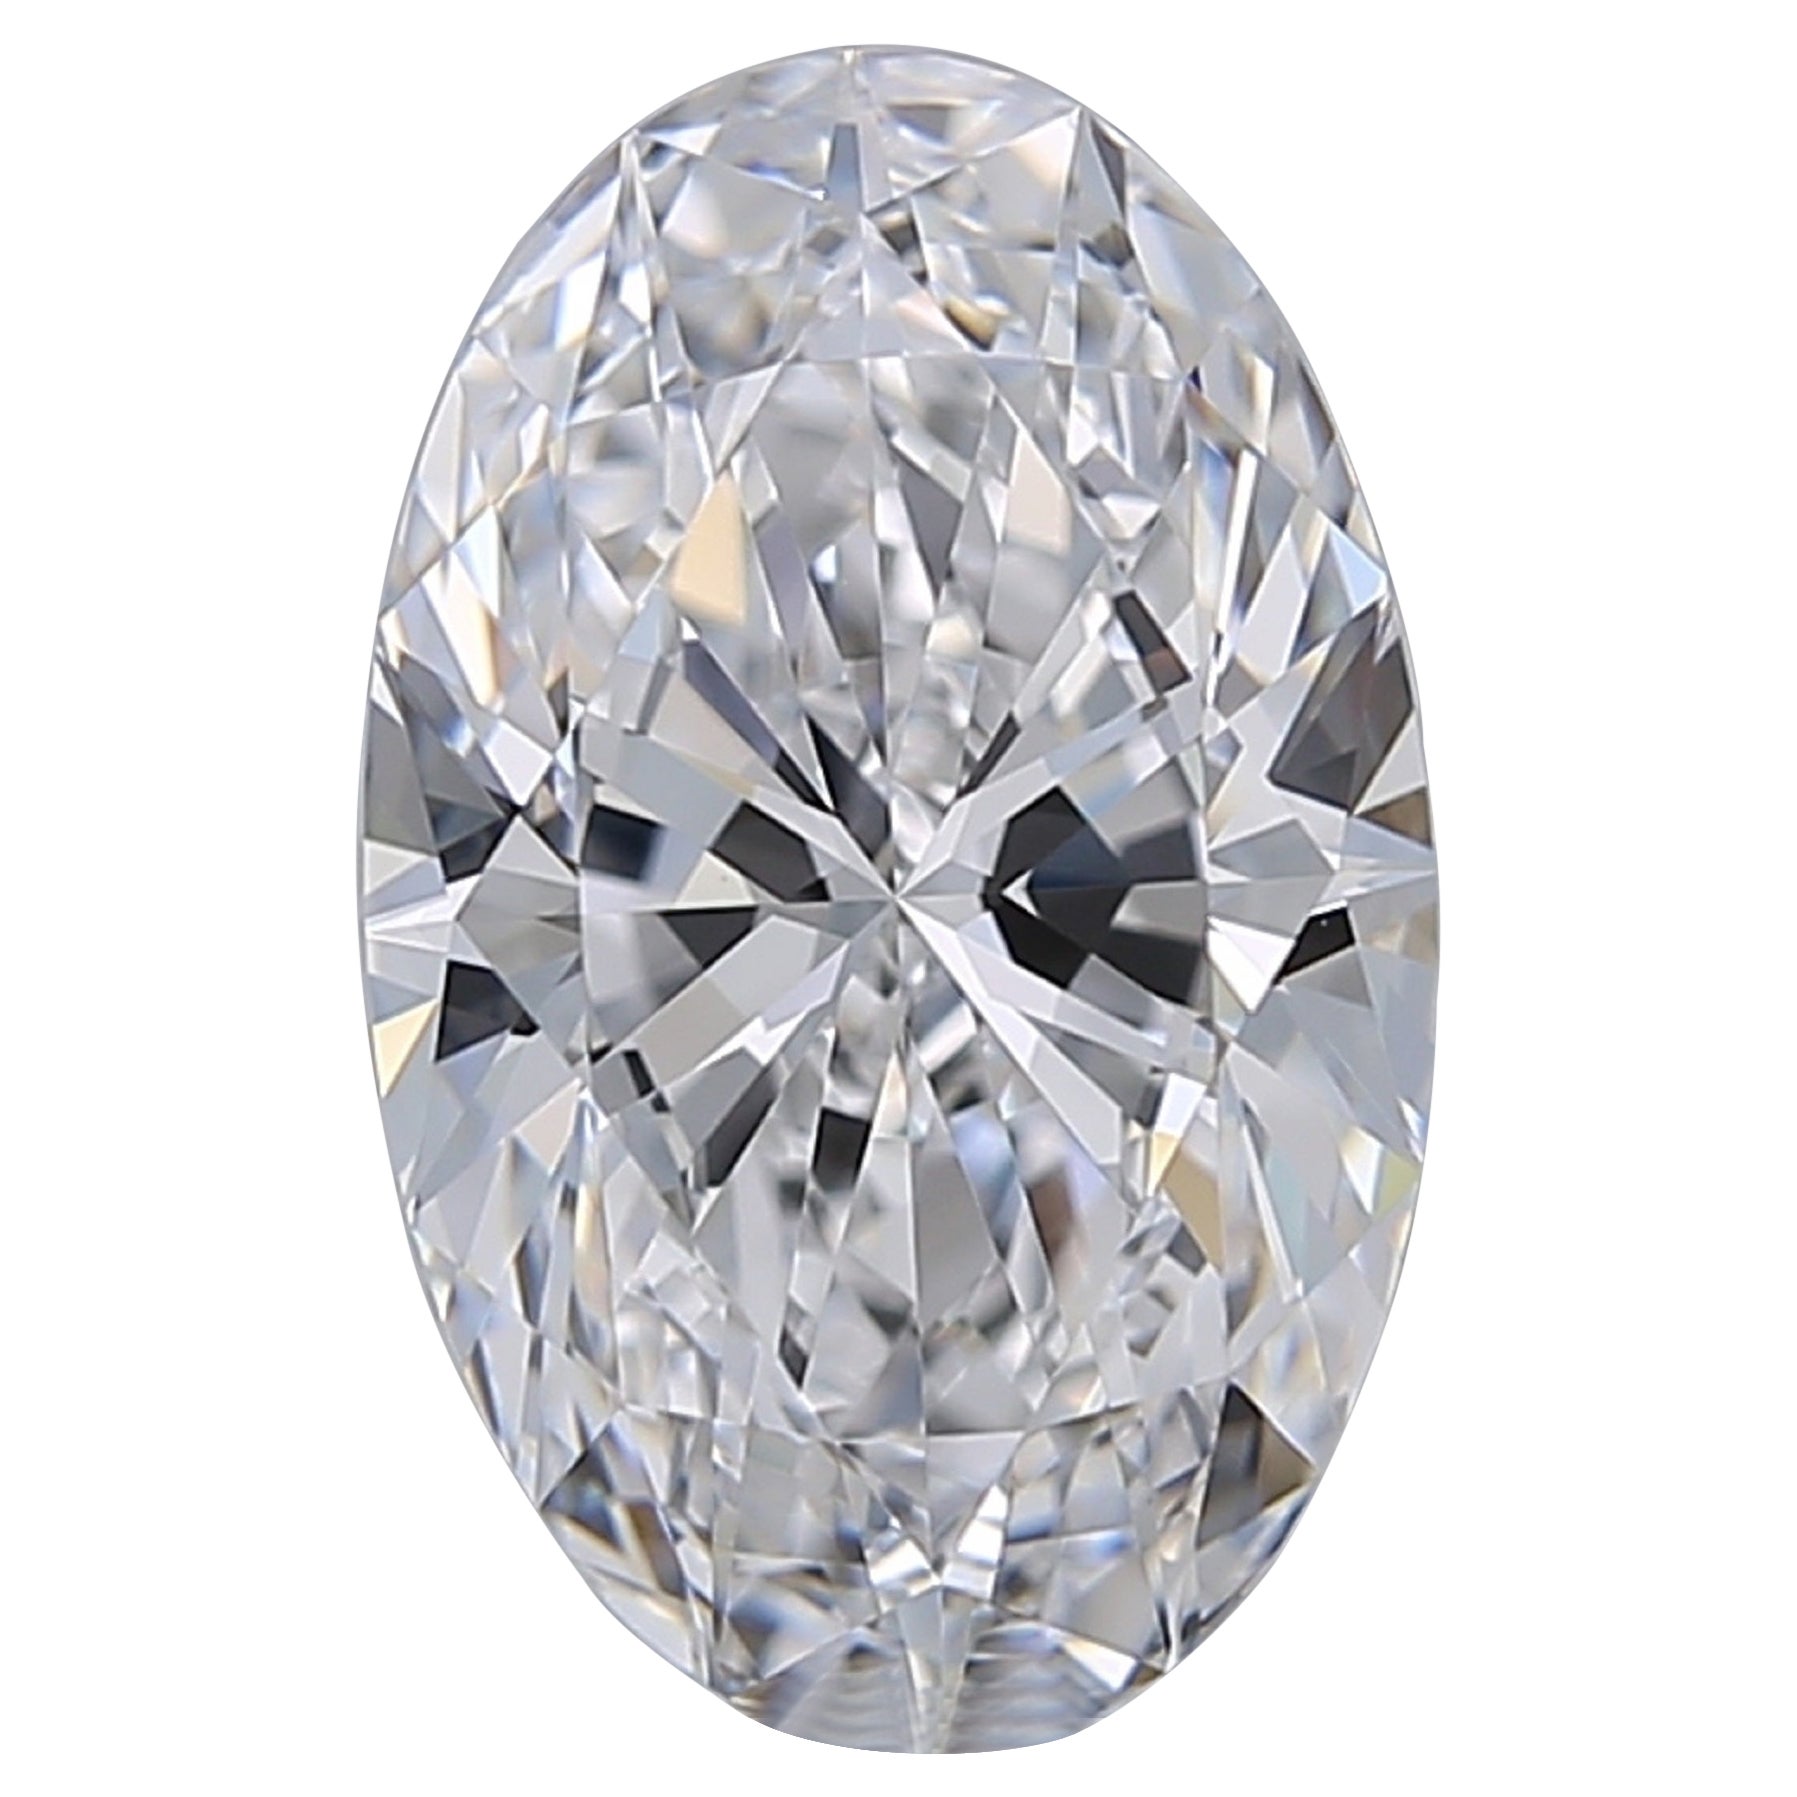 RARE FLAWLESS TYPE IIA 3.01 Carat Oval Diamond 